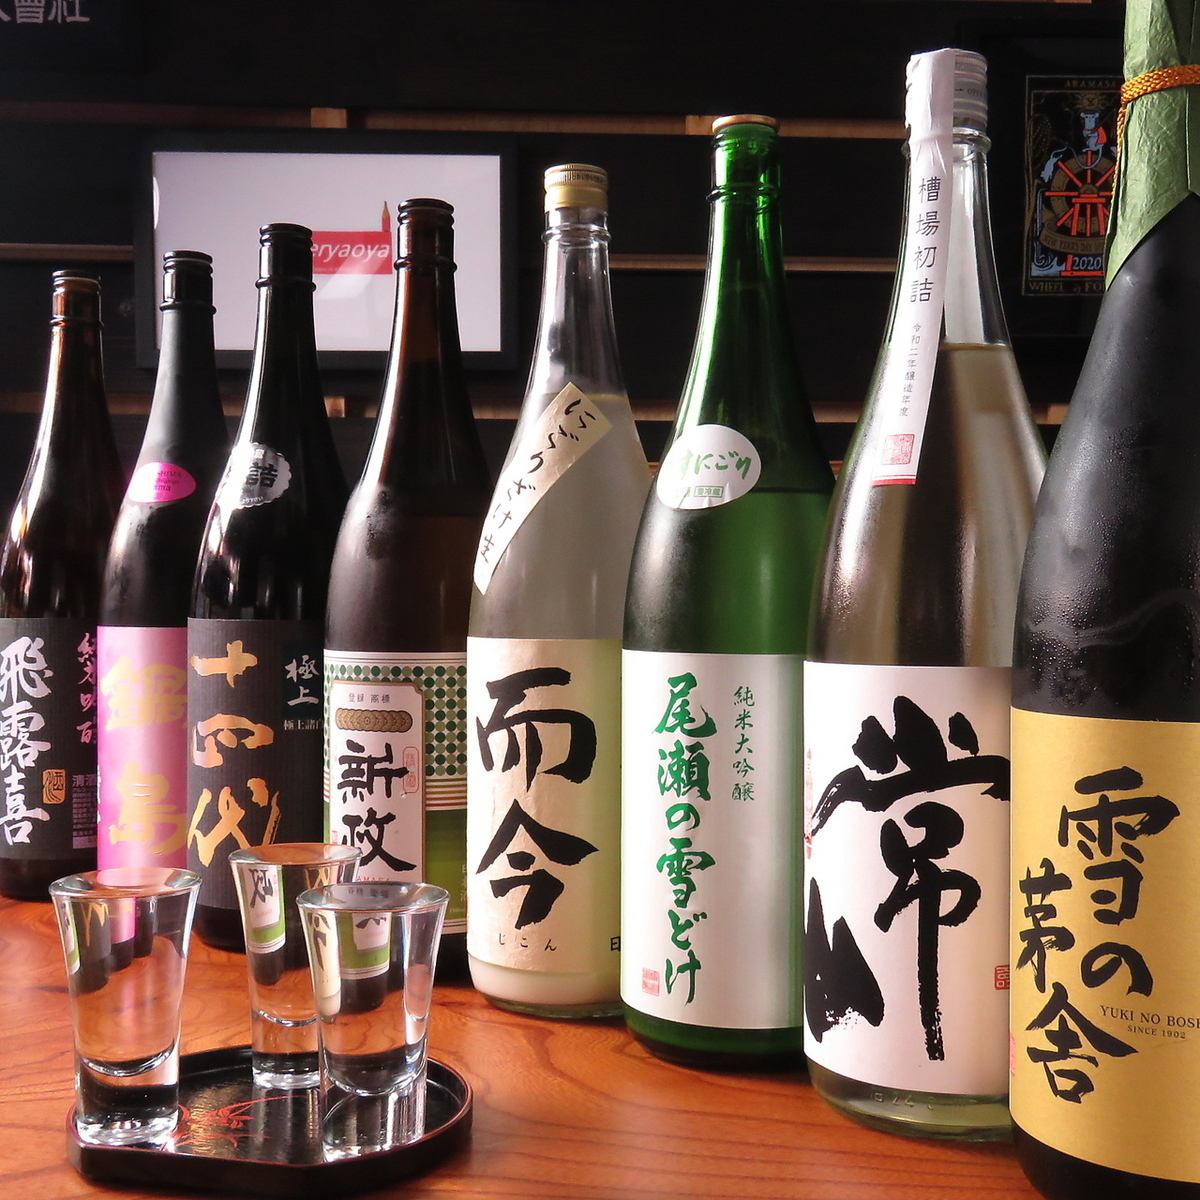 全国から取り寄せた種類豊富な日本酒を♪日本酒好きにはたまらないラインナップです★